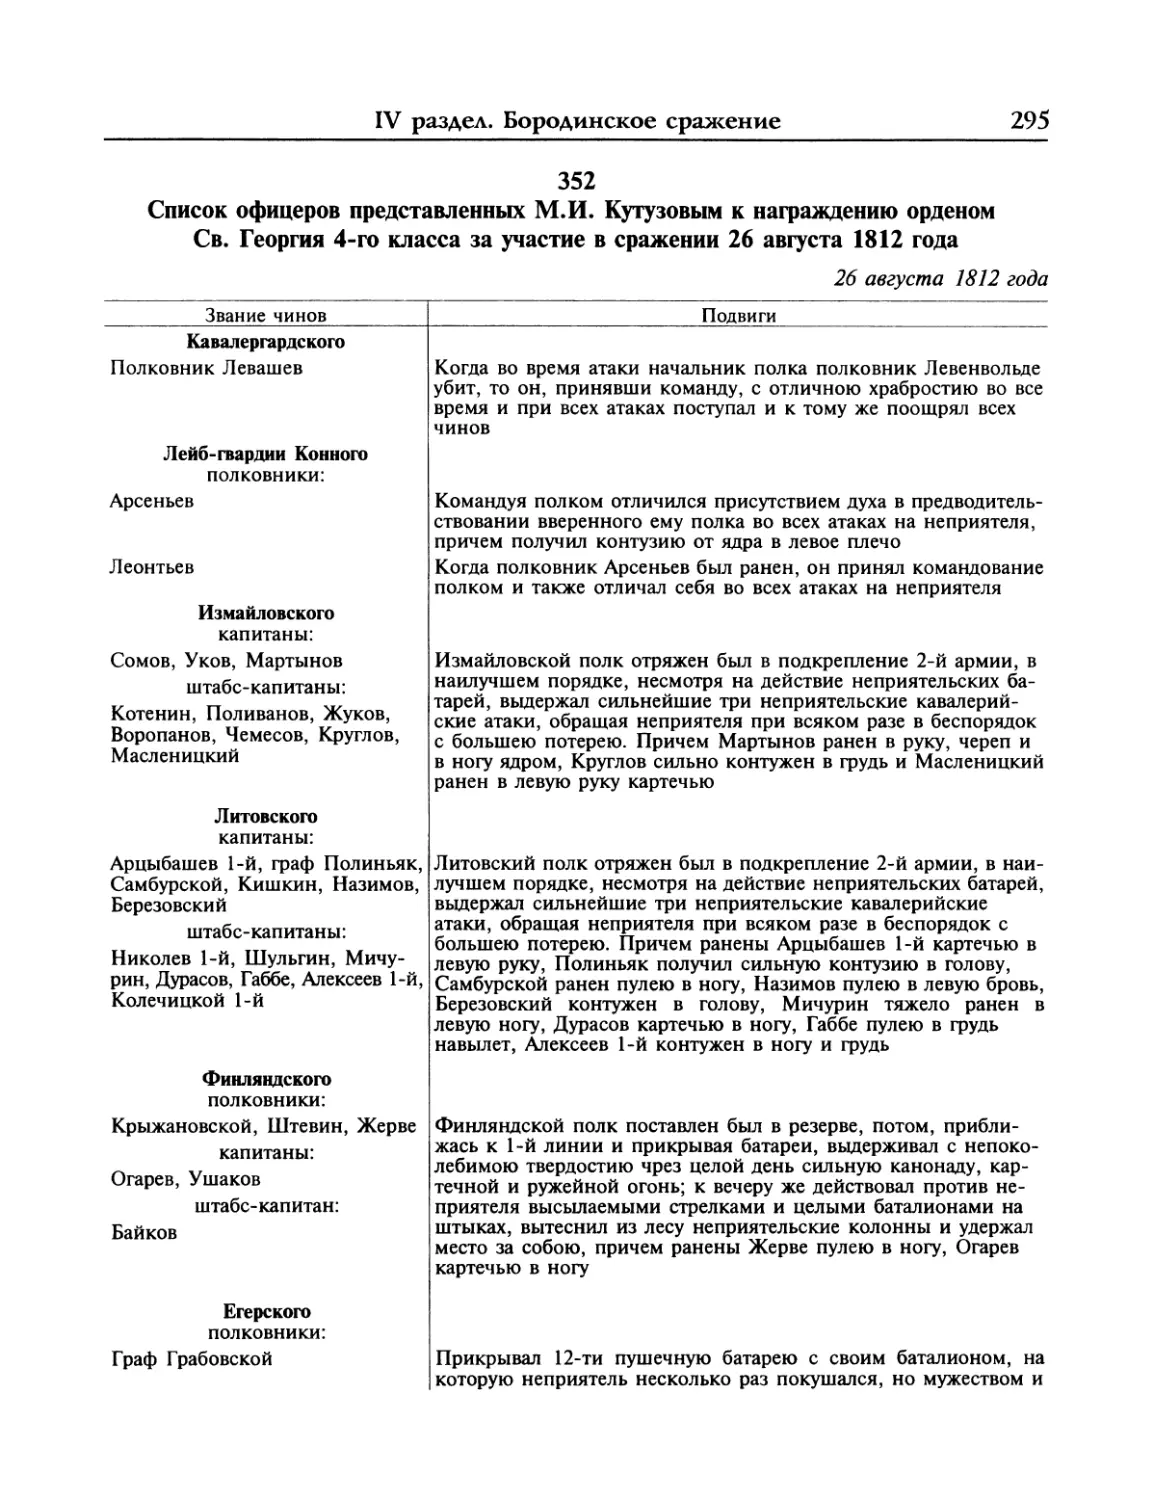 Список офицеров представленных М.И.Кутузовым к награждению